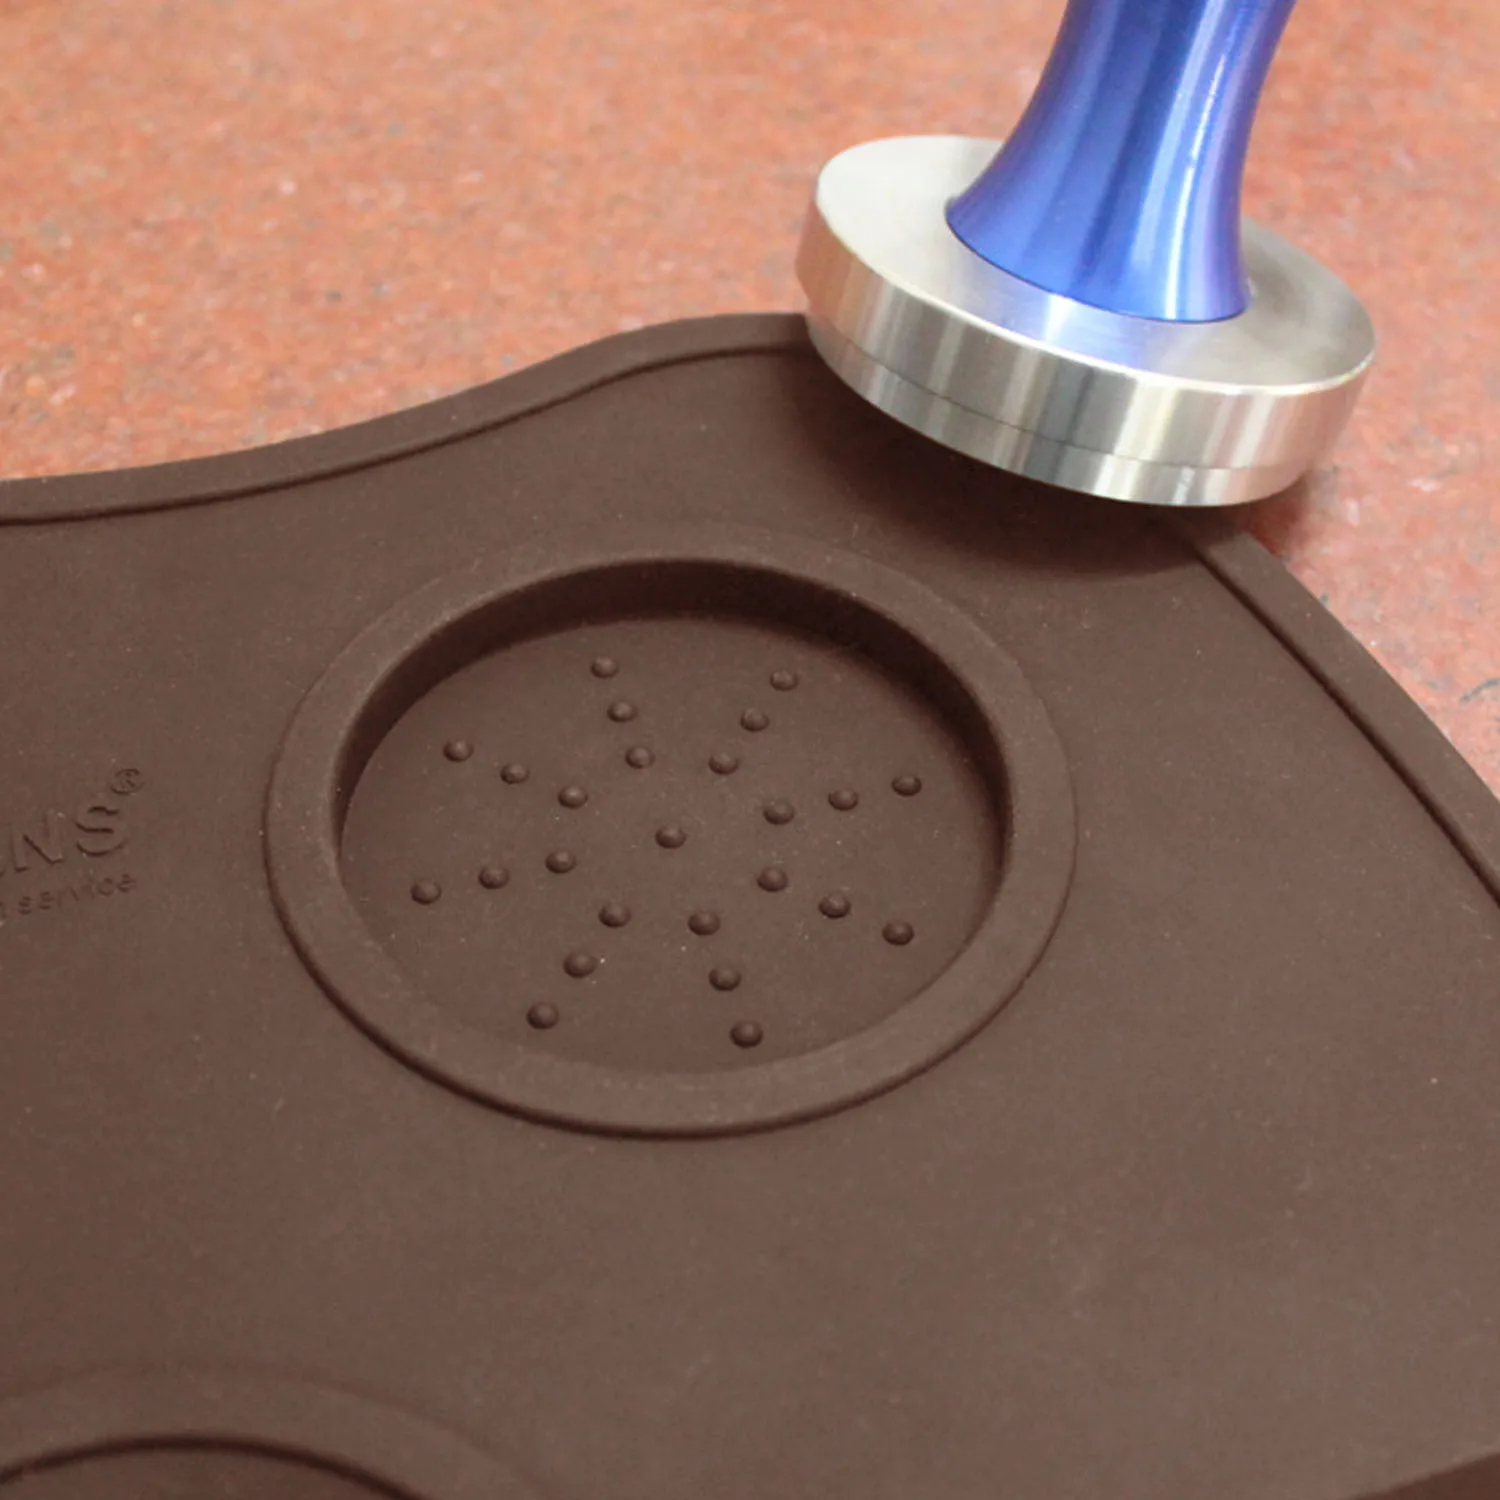 Behogar силиконовая эспрессо Кофейная подставка для трамбовки угловая трамбовка коврик инструменты для баристас ж/не скользкая еда безопасные Кухонные гаджеты